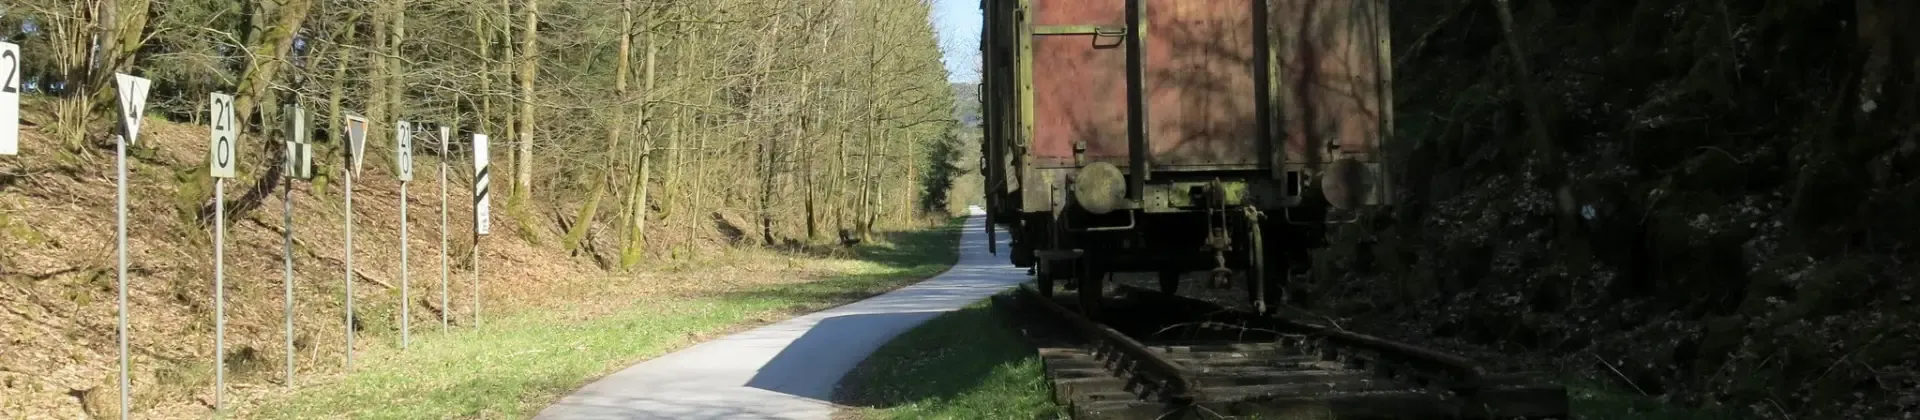 Sauerlandradring: Ein alter Güterwagen und die Trasse des Sauerlandradrings